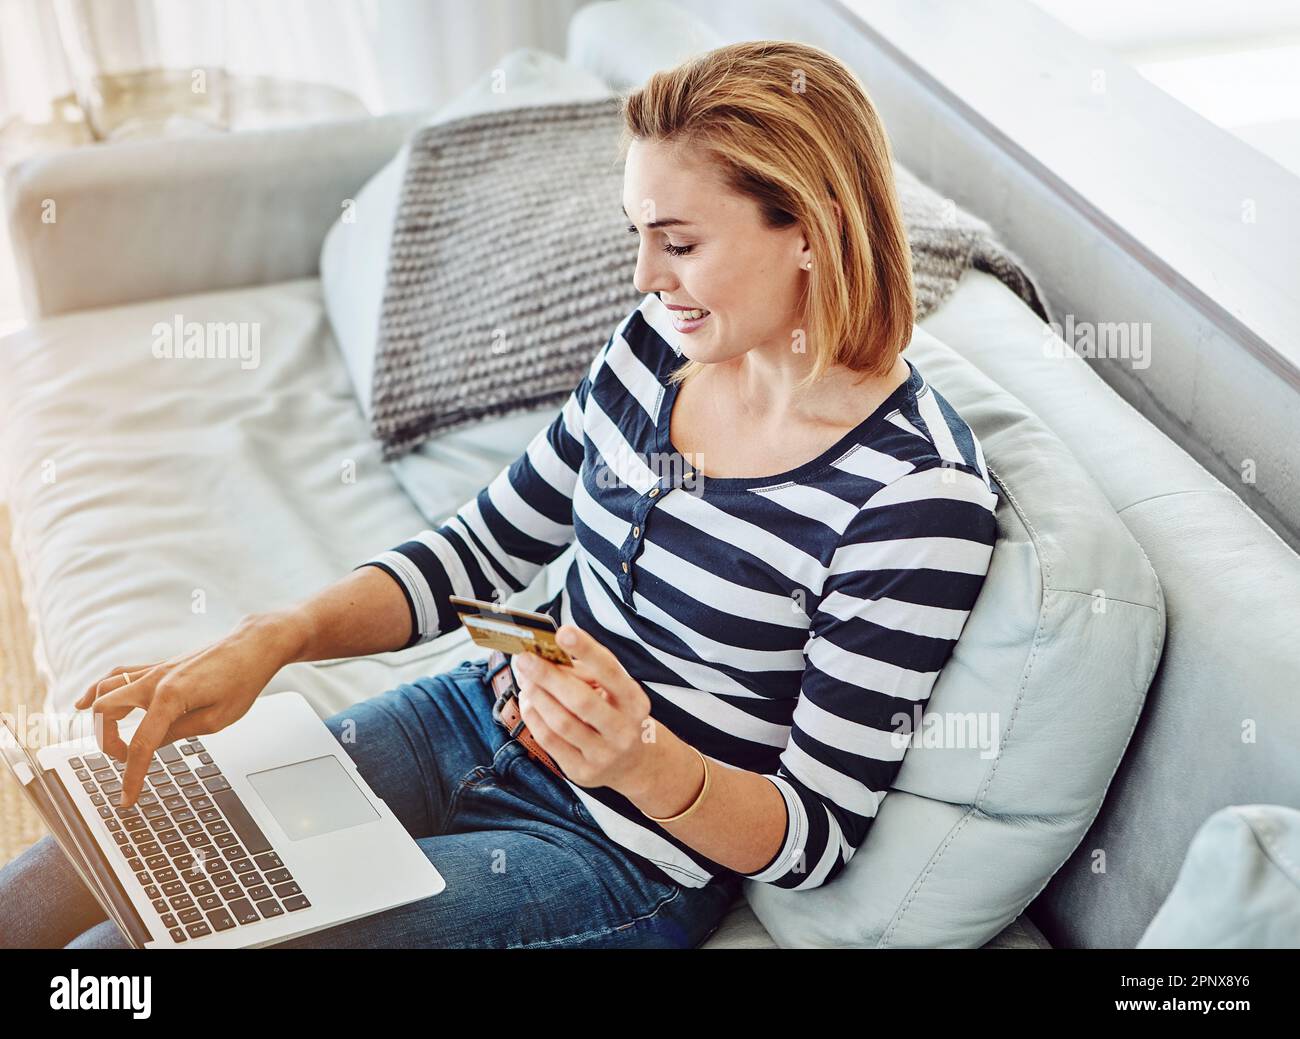 Dépenser un peu d'argent en ligne. Prise de vue en grand angle d'une jeune femme attrayante magasiner en ligne depuis le confort de la maison. Banque D'Images